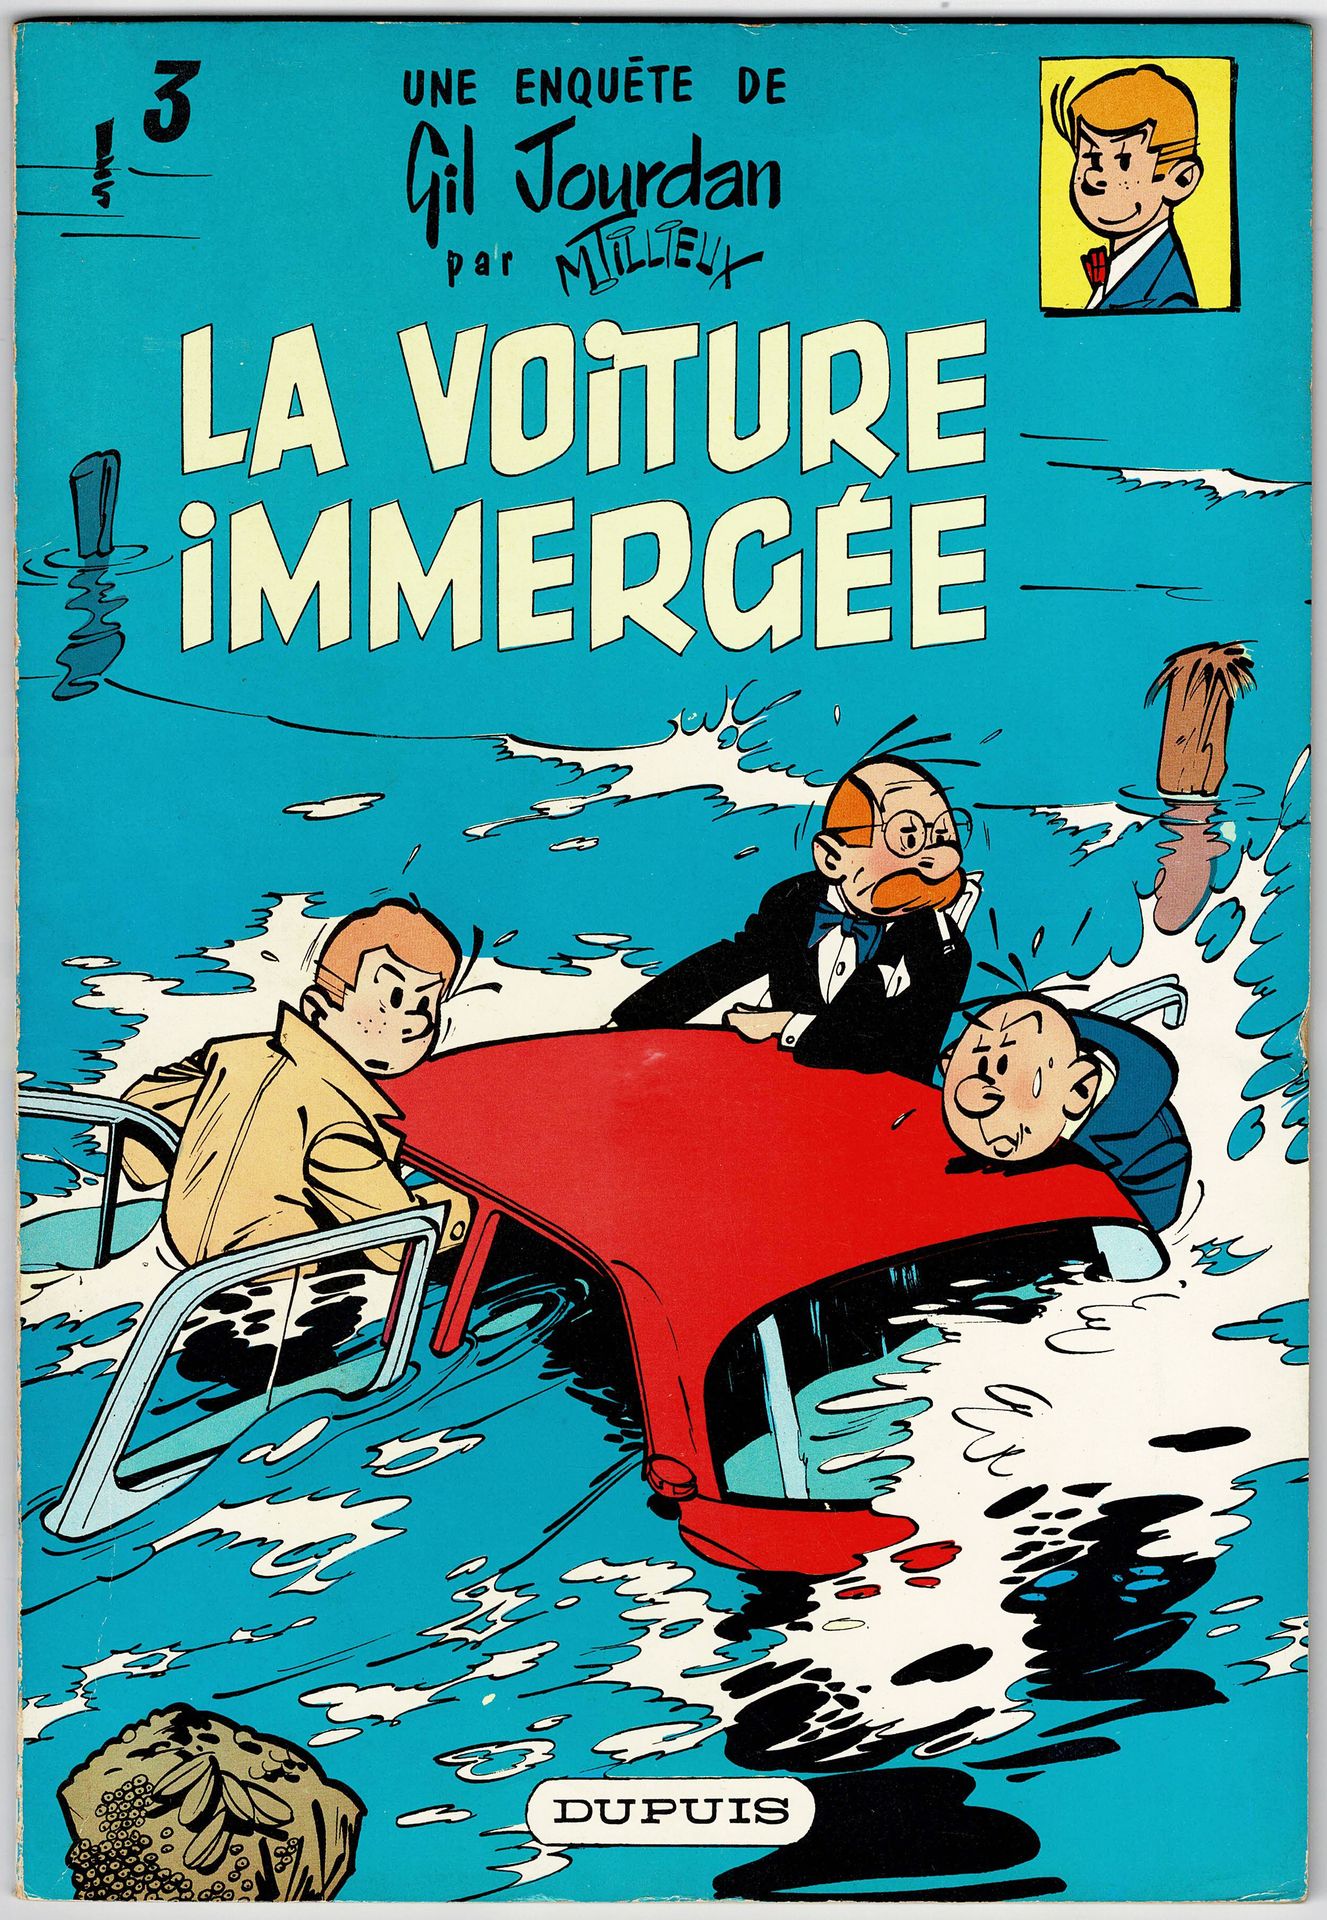 Gil Jourdan La Voiture immergée, édition originale de 1960. Très très bon état.